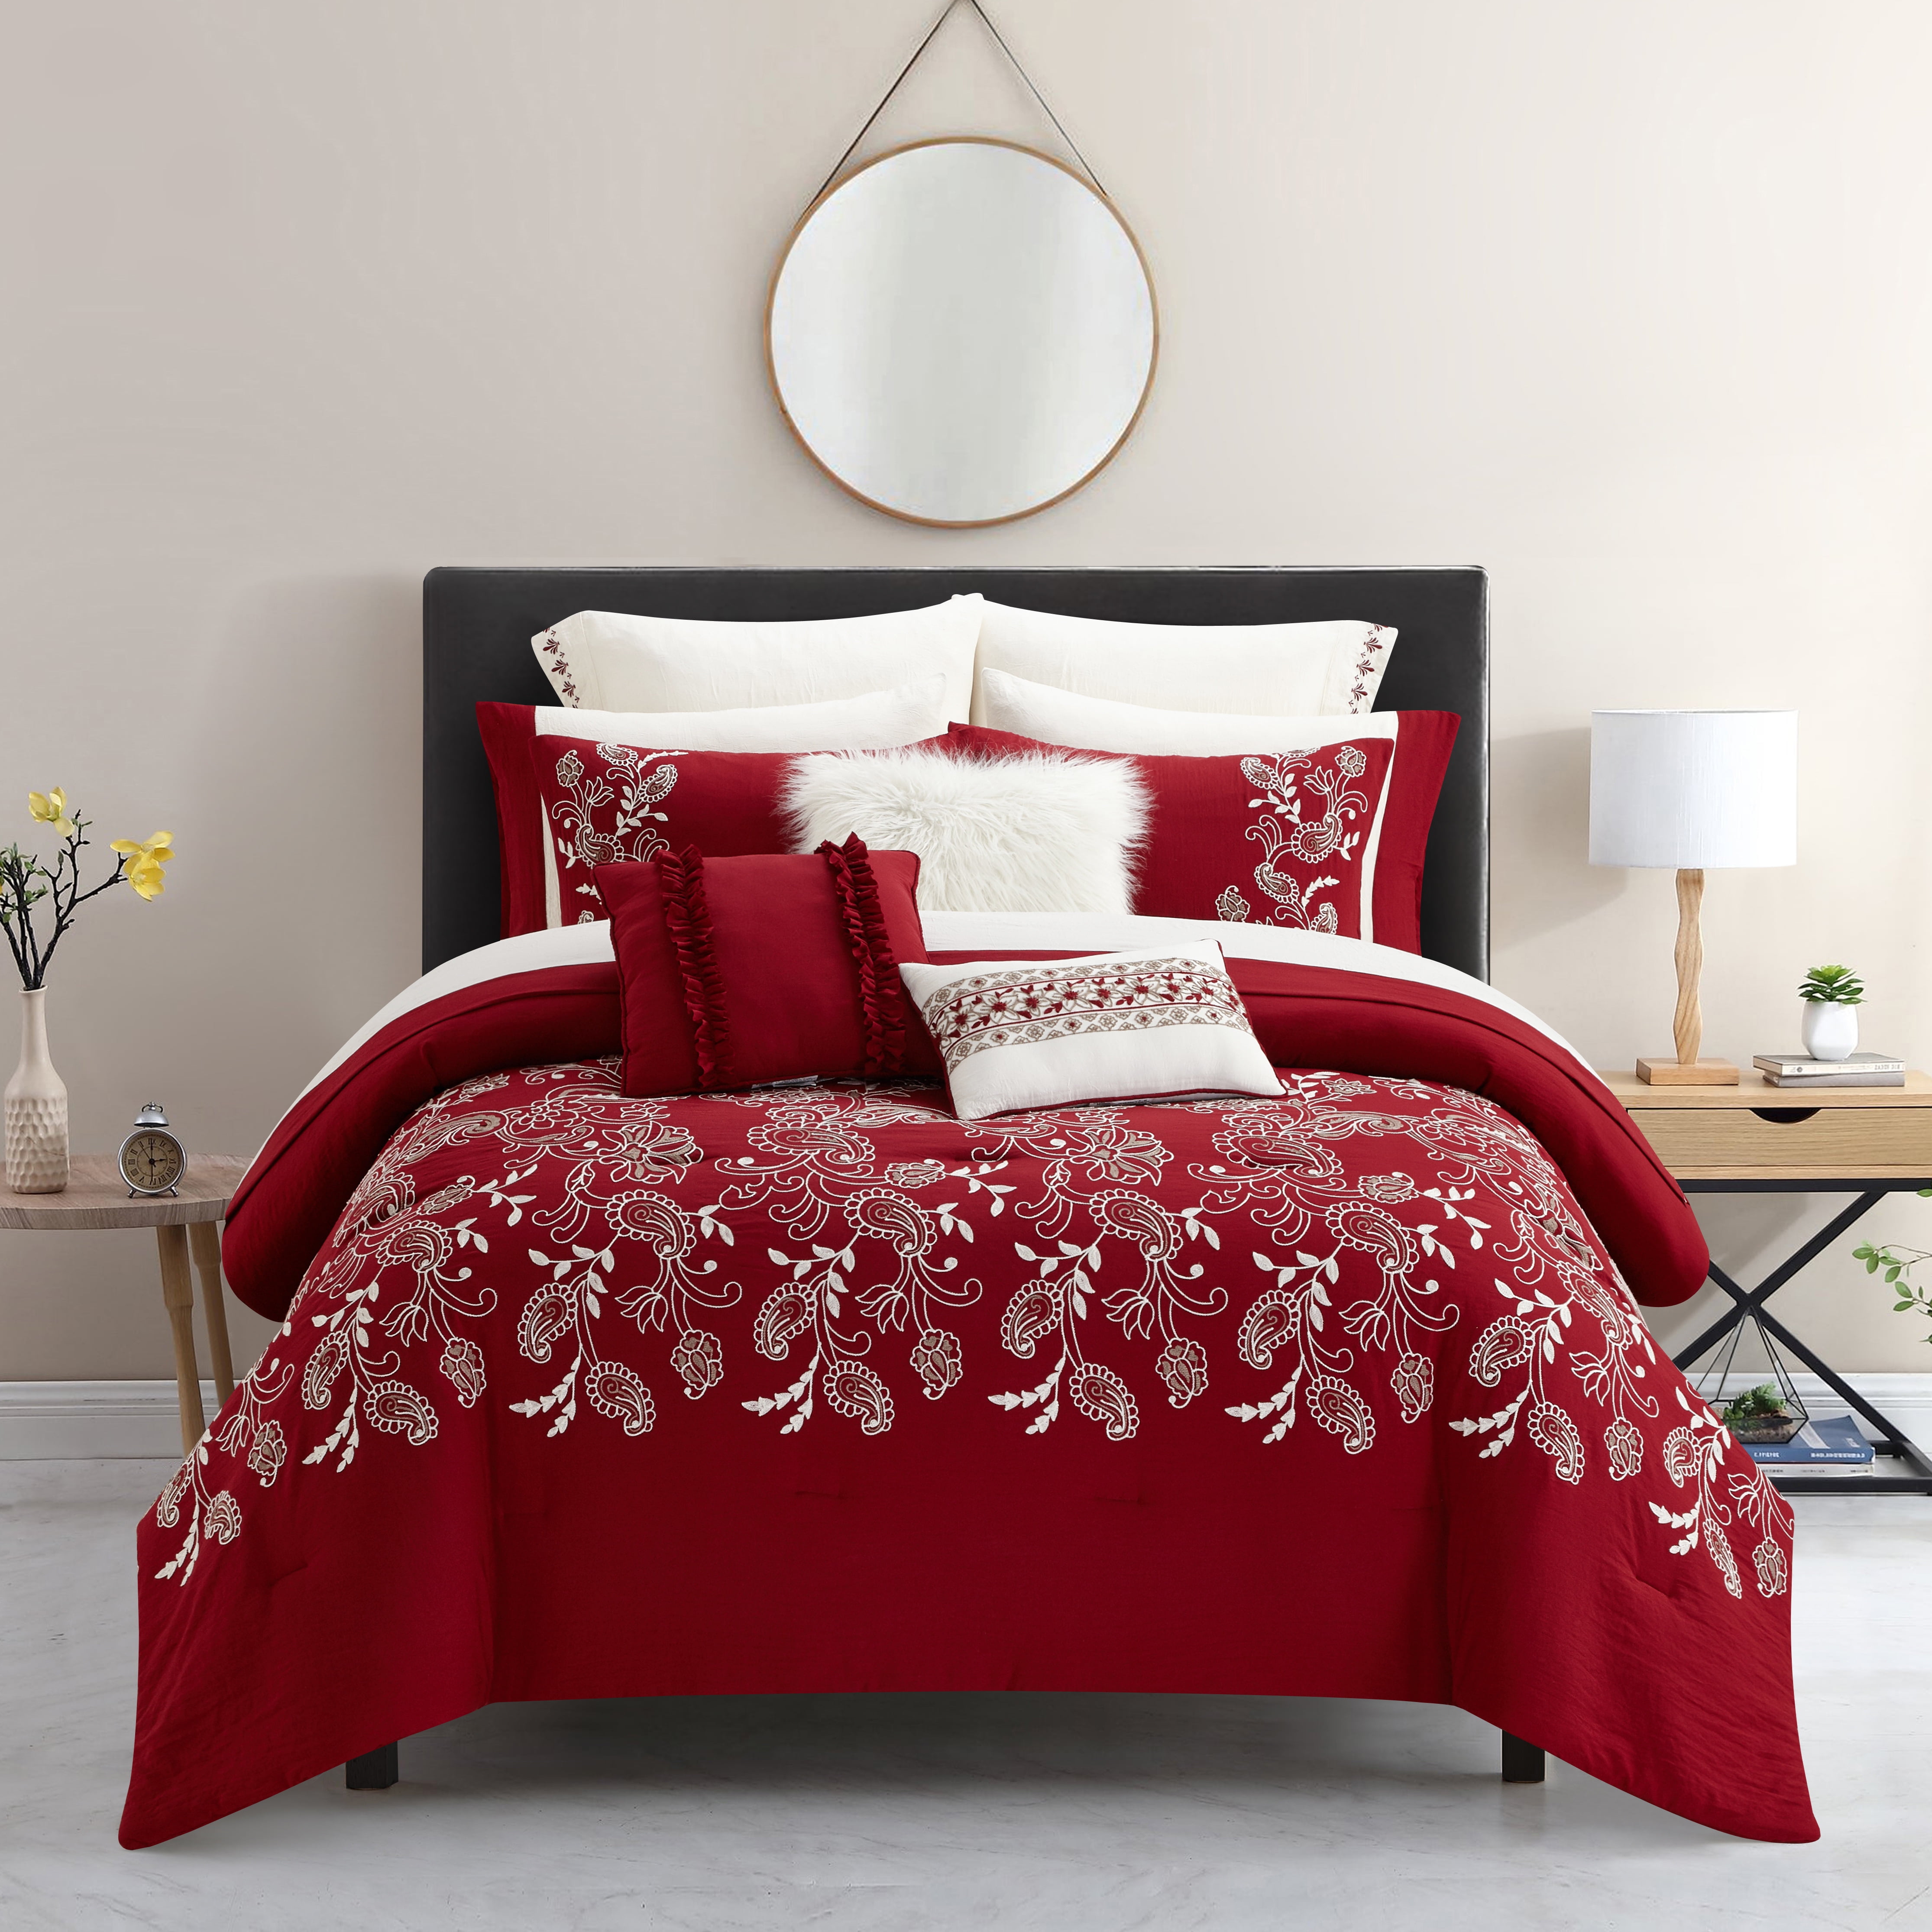 Comforter Set Burgundy Black Reversible Bed in Bag Bedding King Twin Queen 3 pcs 